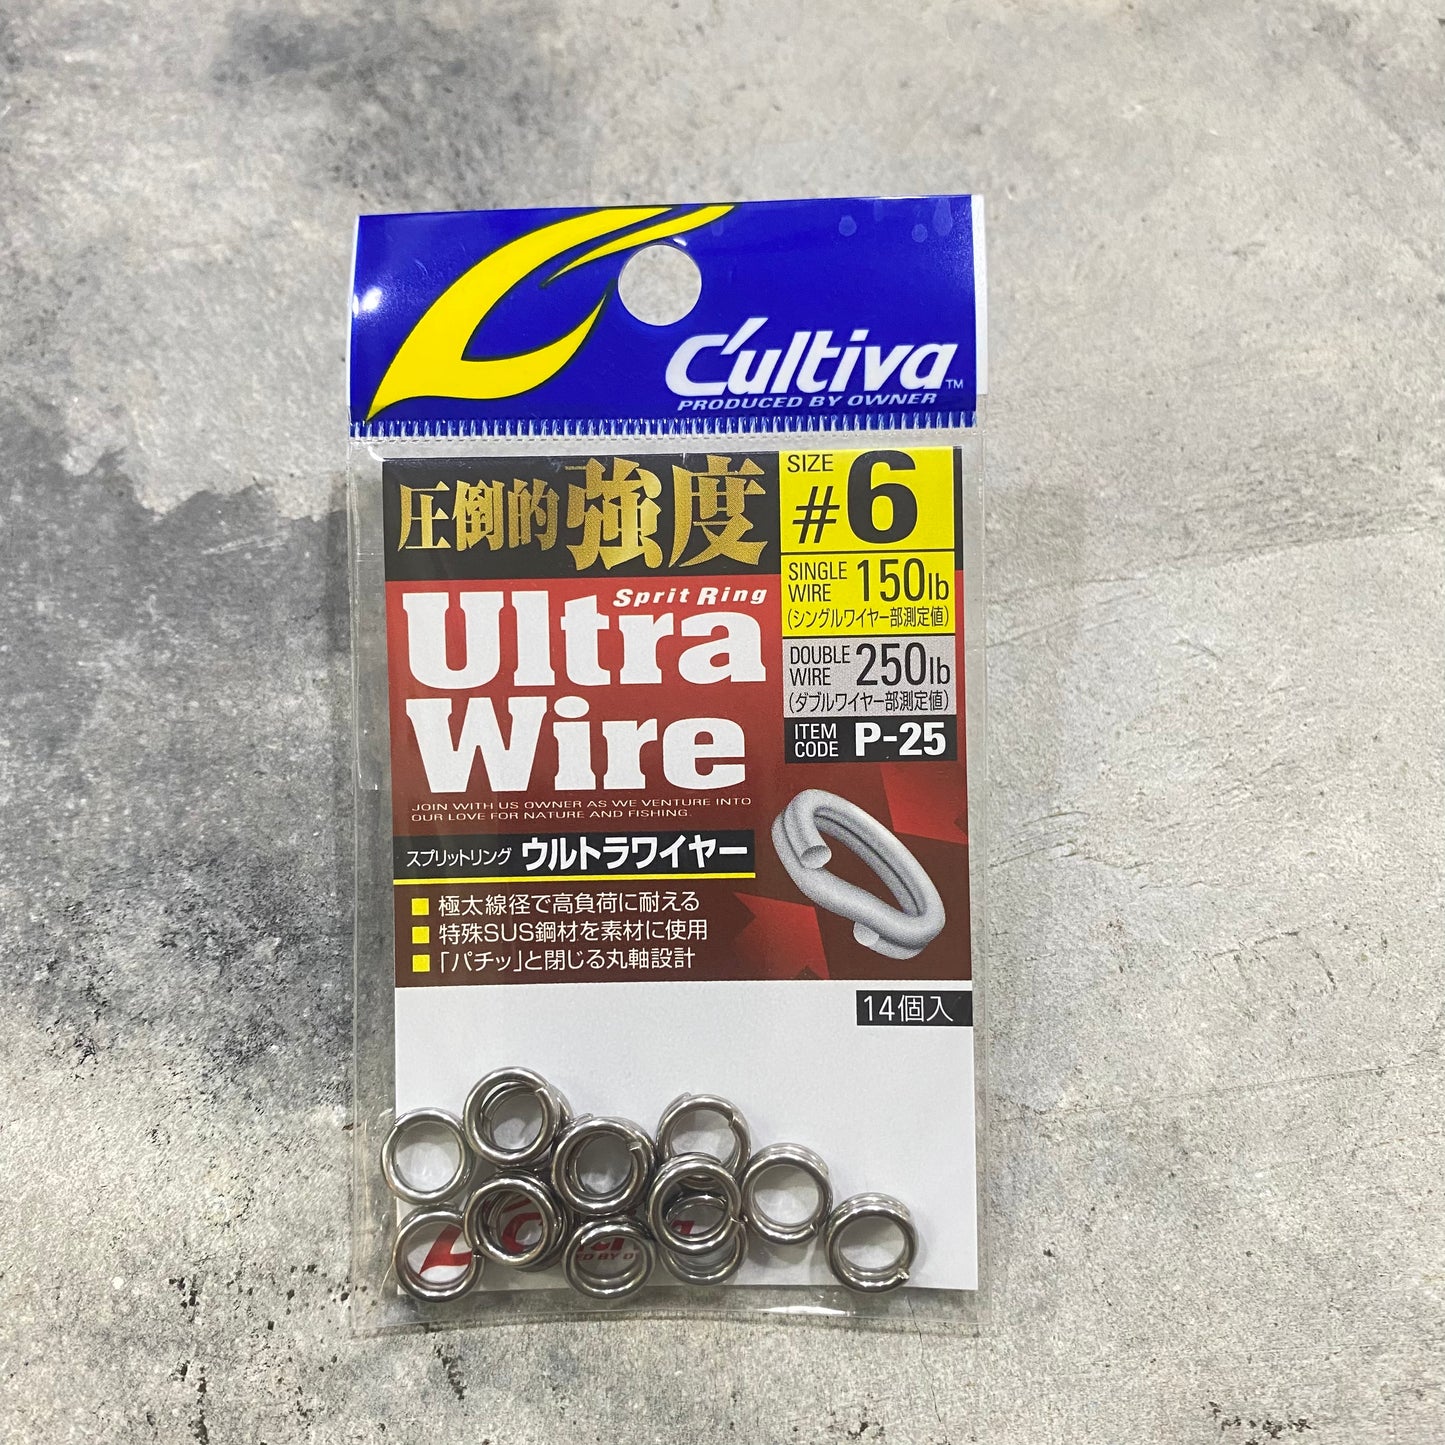 Ultra Wire Split Ring